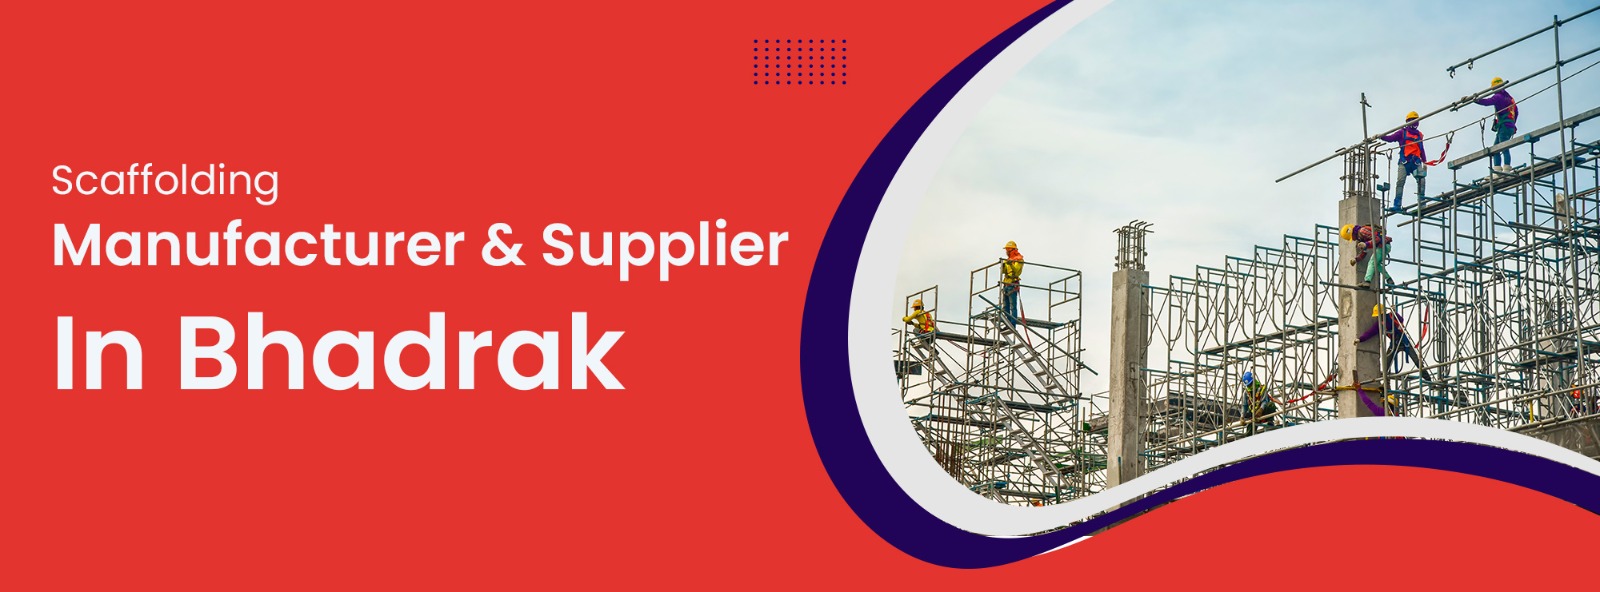 Scaffolding Manaufacturer & Supplier In Bhadrak